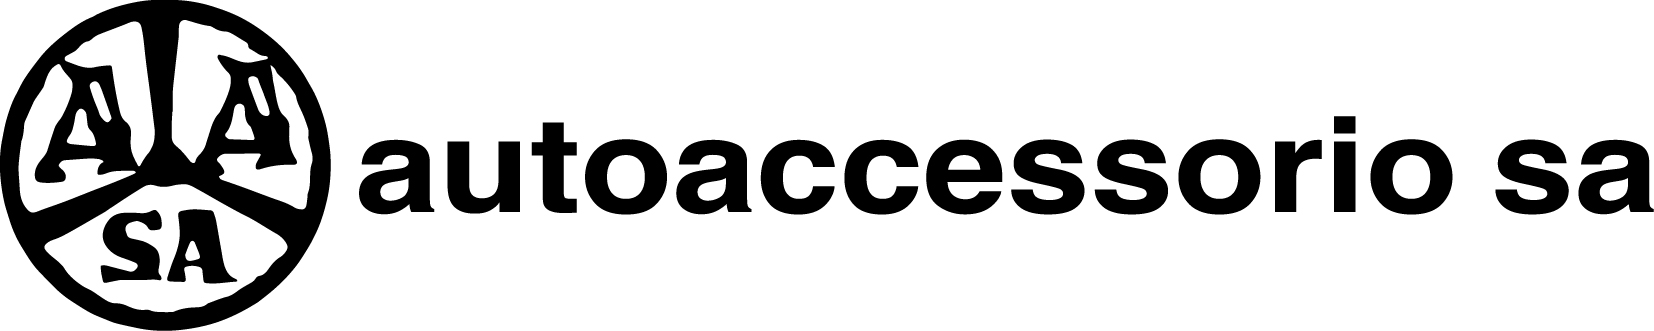 logo_Autoaccessorio